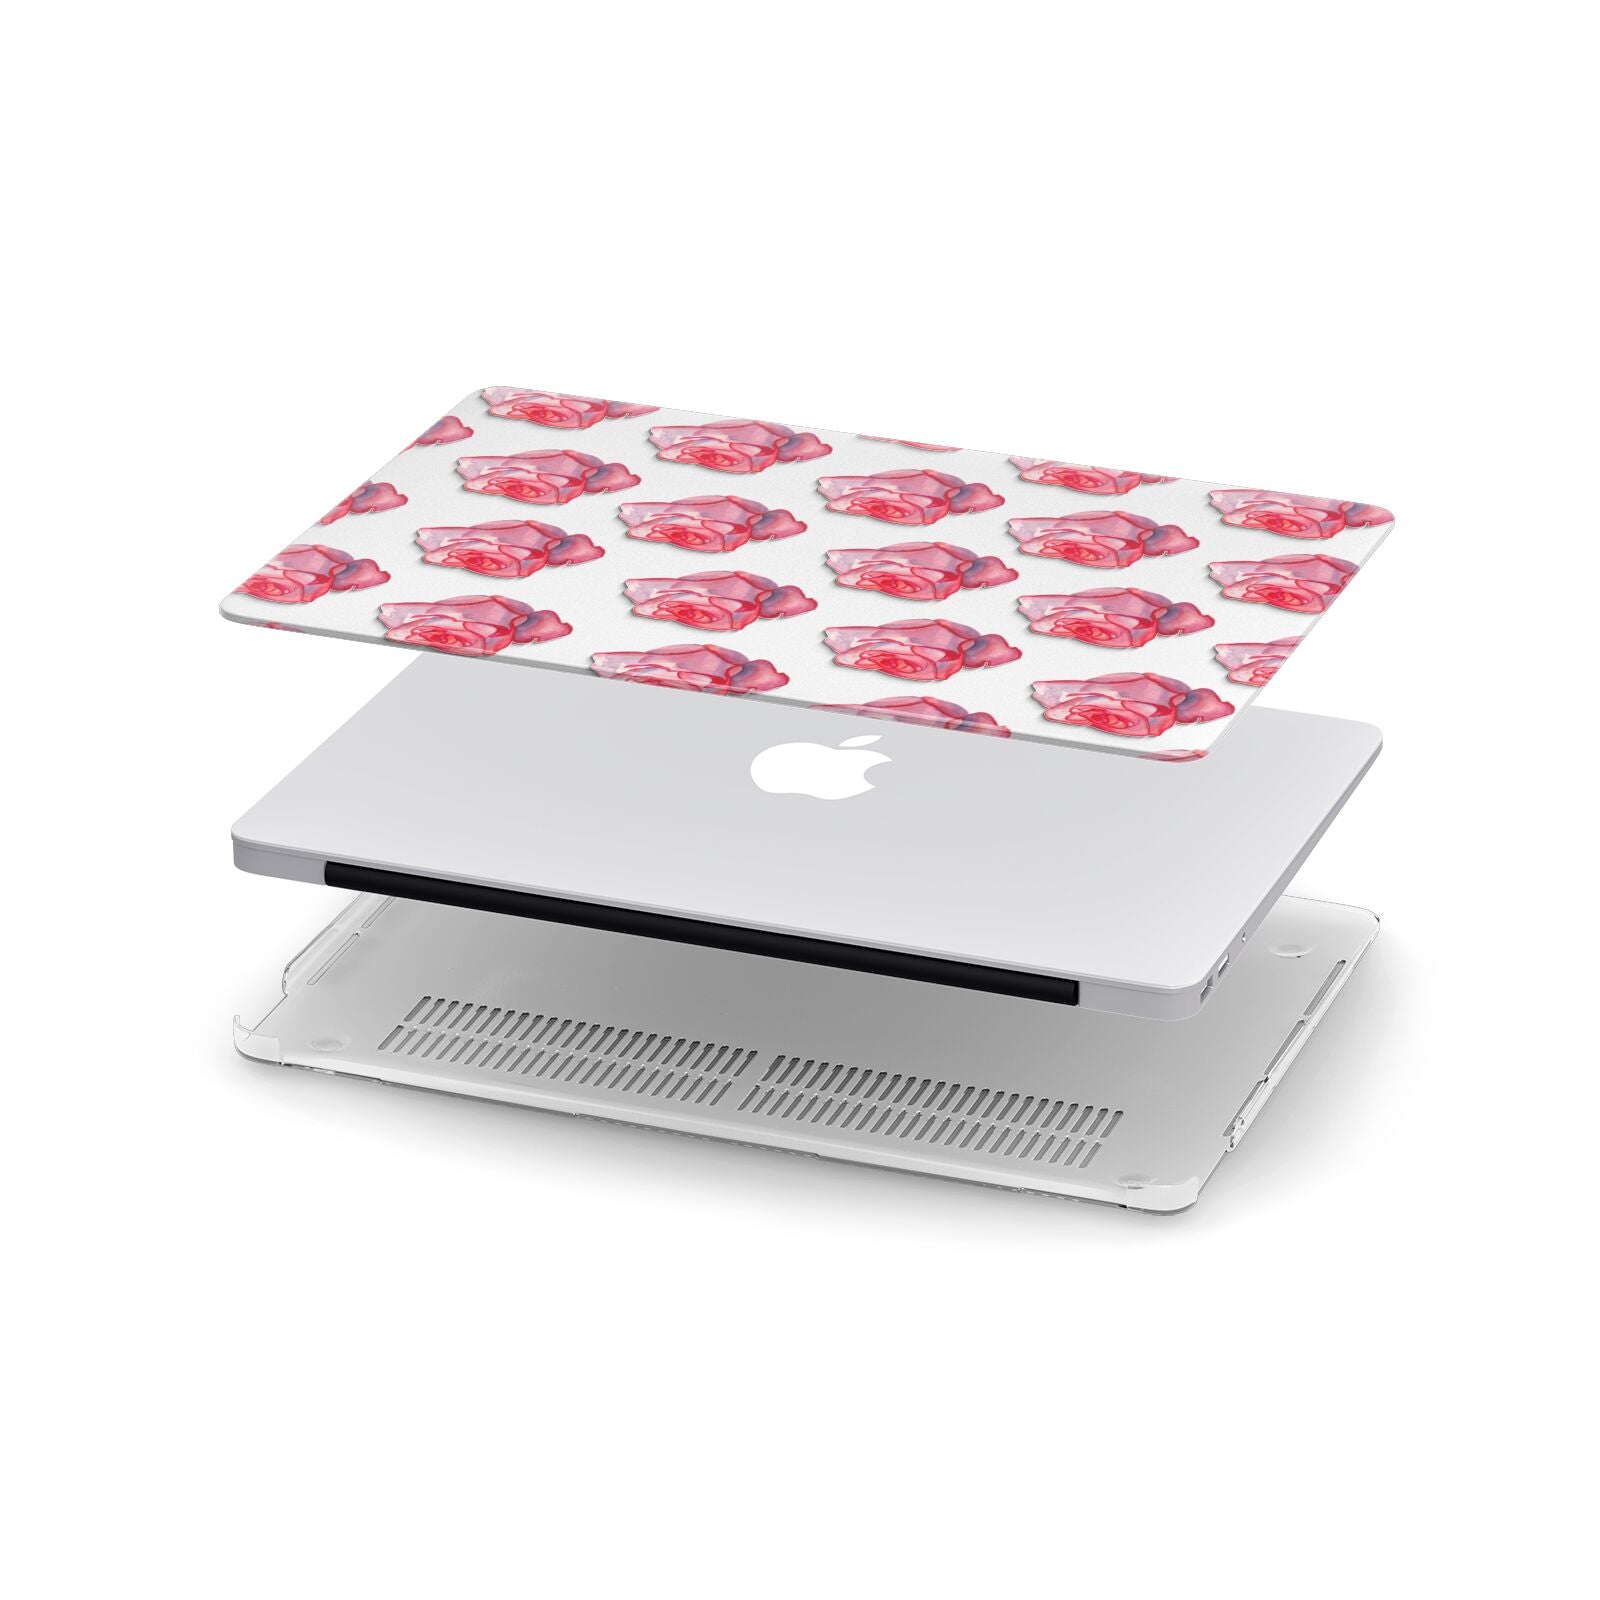 Pink Roses Apple MacBook Case in Detail